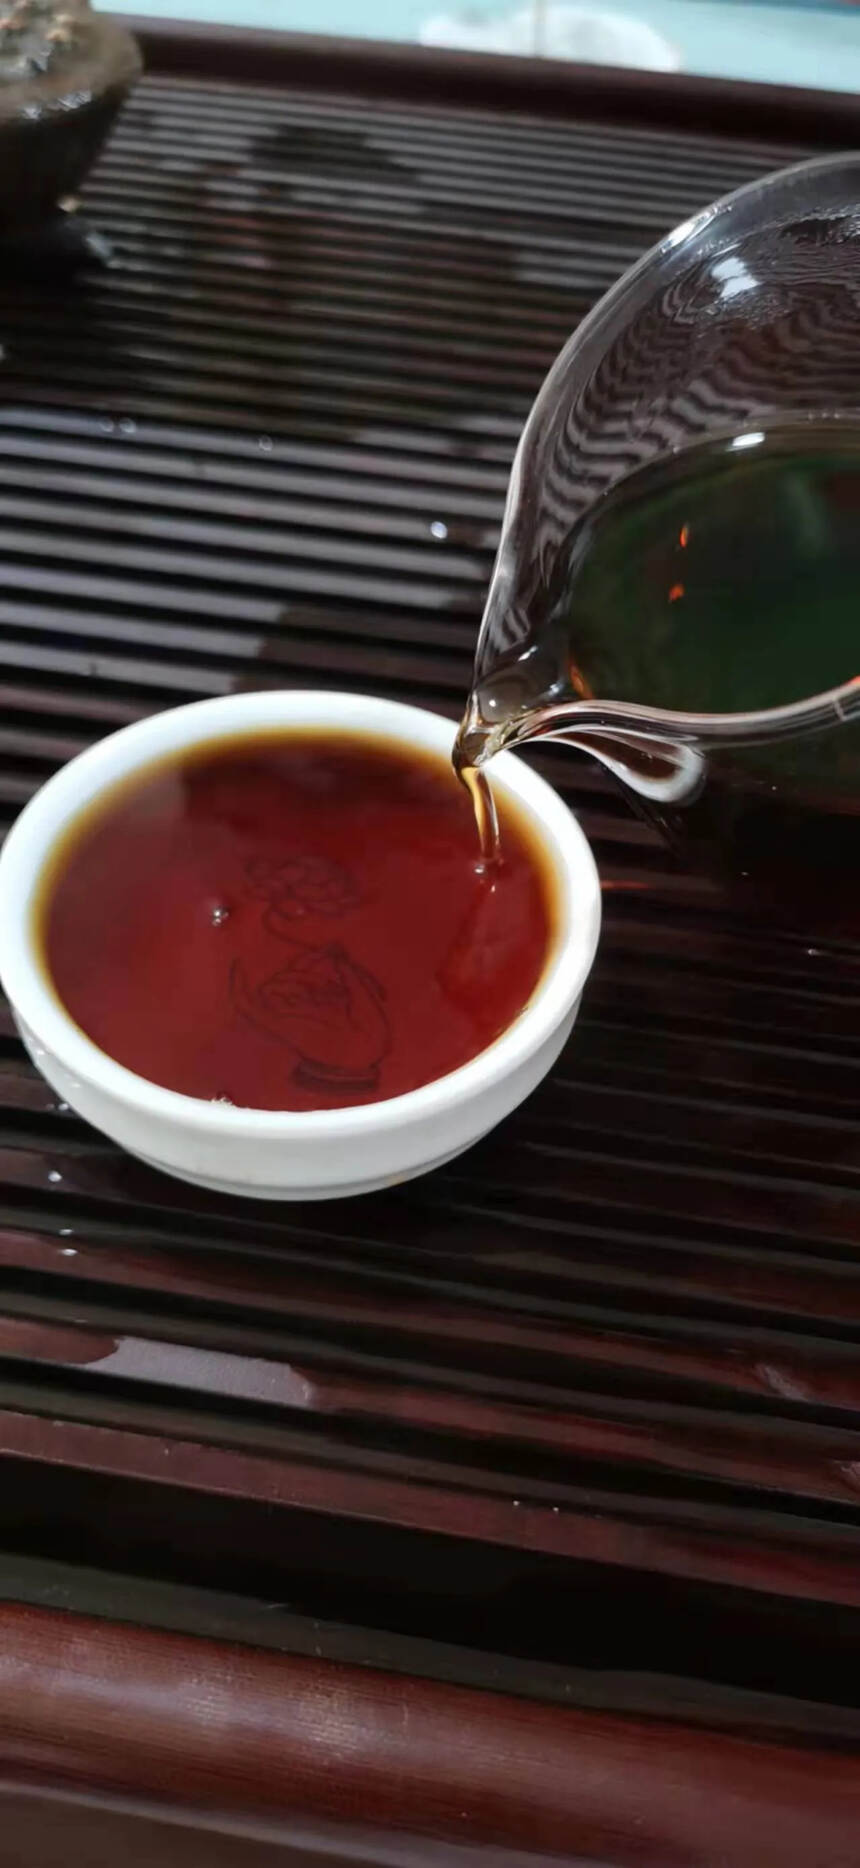 2016年布朗山头春发酵。#普洱茶# #茶生活# #